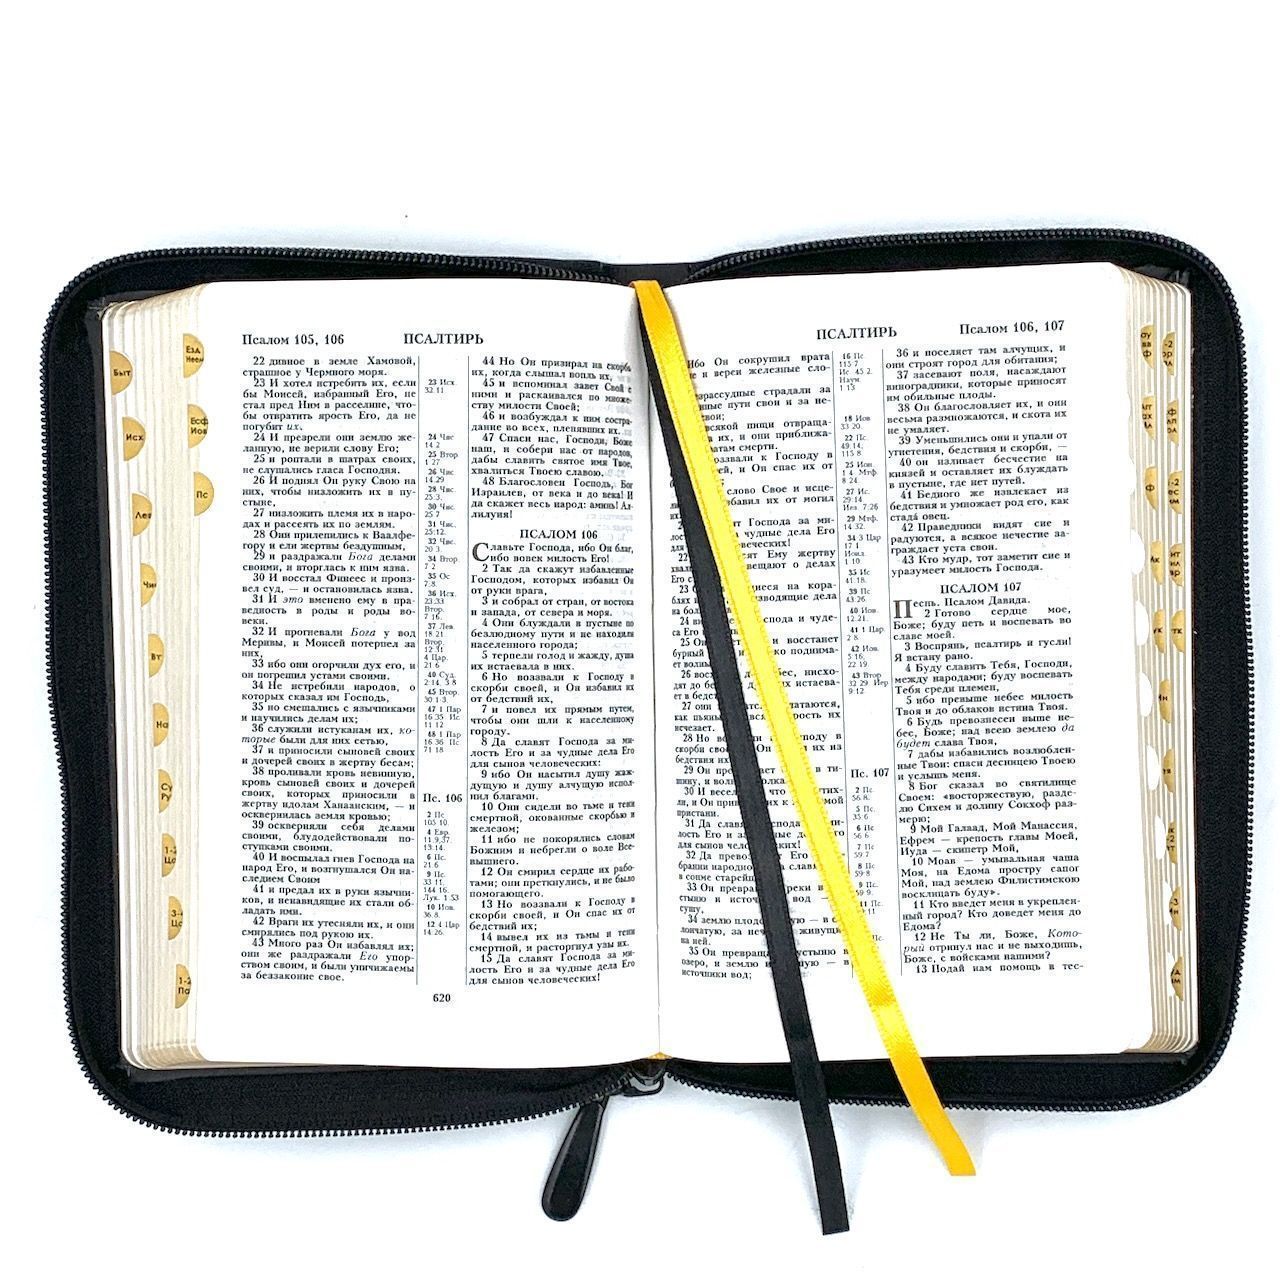 Библия 048 zti код 24048-2 дизайн "золотой лев", кожаный переплет на молнии с индексами, цвет черный, формат 125*195 мм